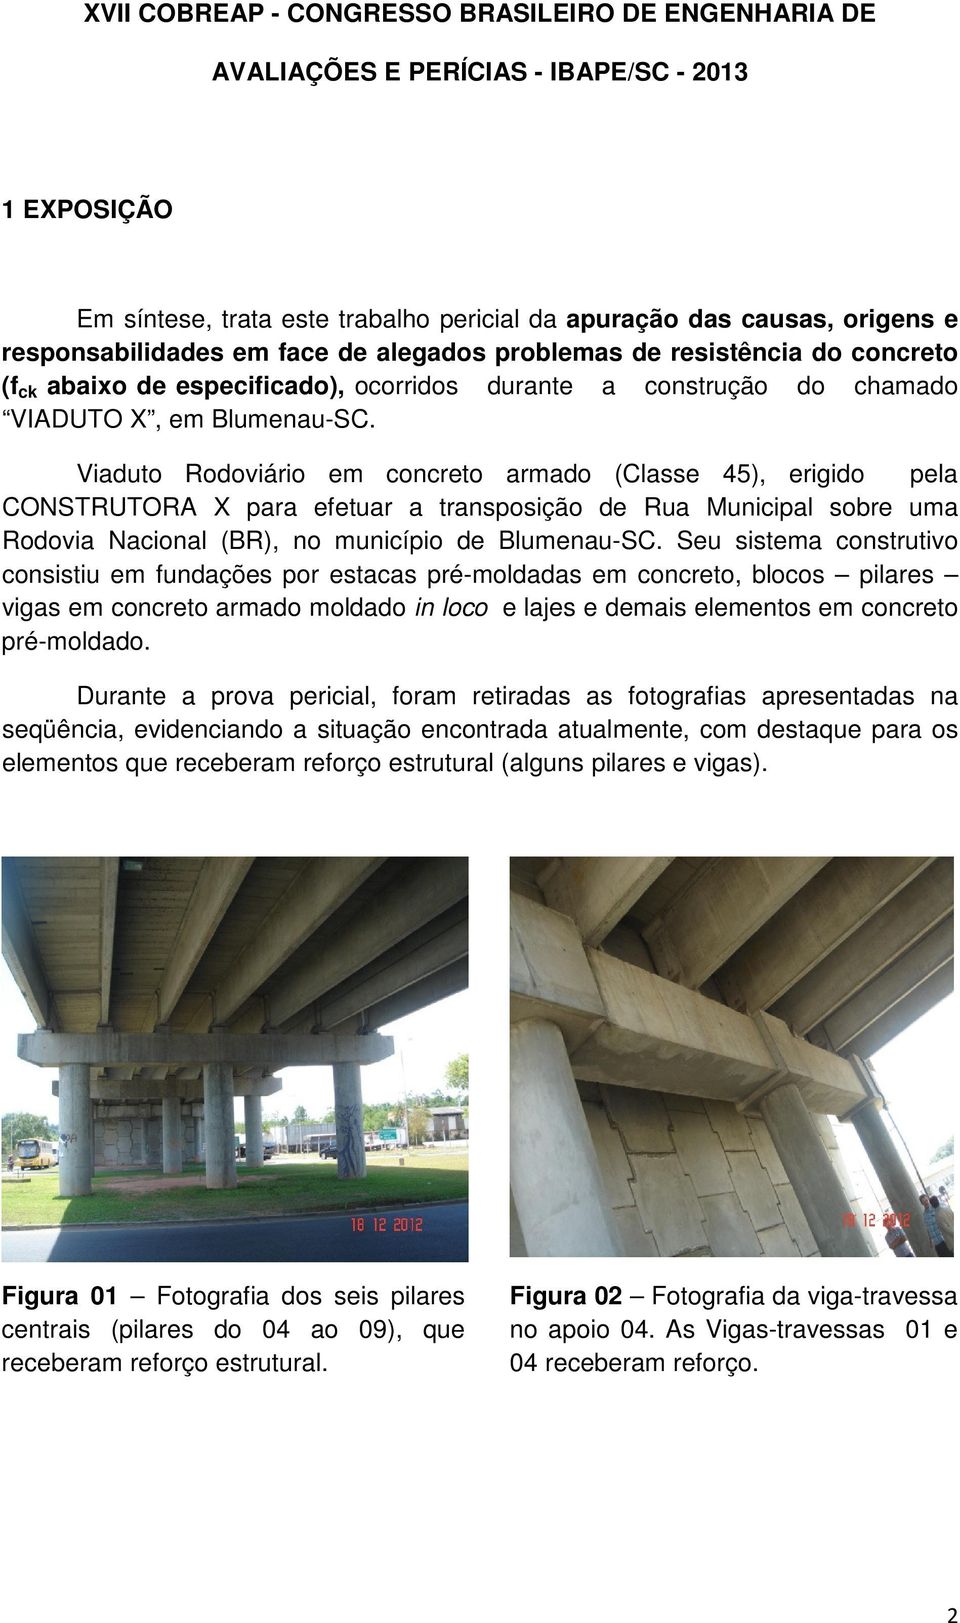 Viaduto Rodoviário em concreto armado (Classe 45), erigido pela CONSTRUTORA X para efetuar a transposição de Rua Municipal sobre uma Rodovia Nacional (BR), no município de Blumenau-SC.